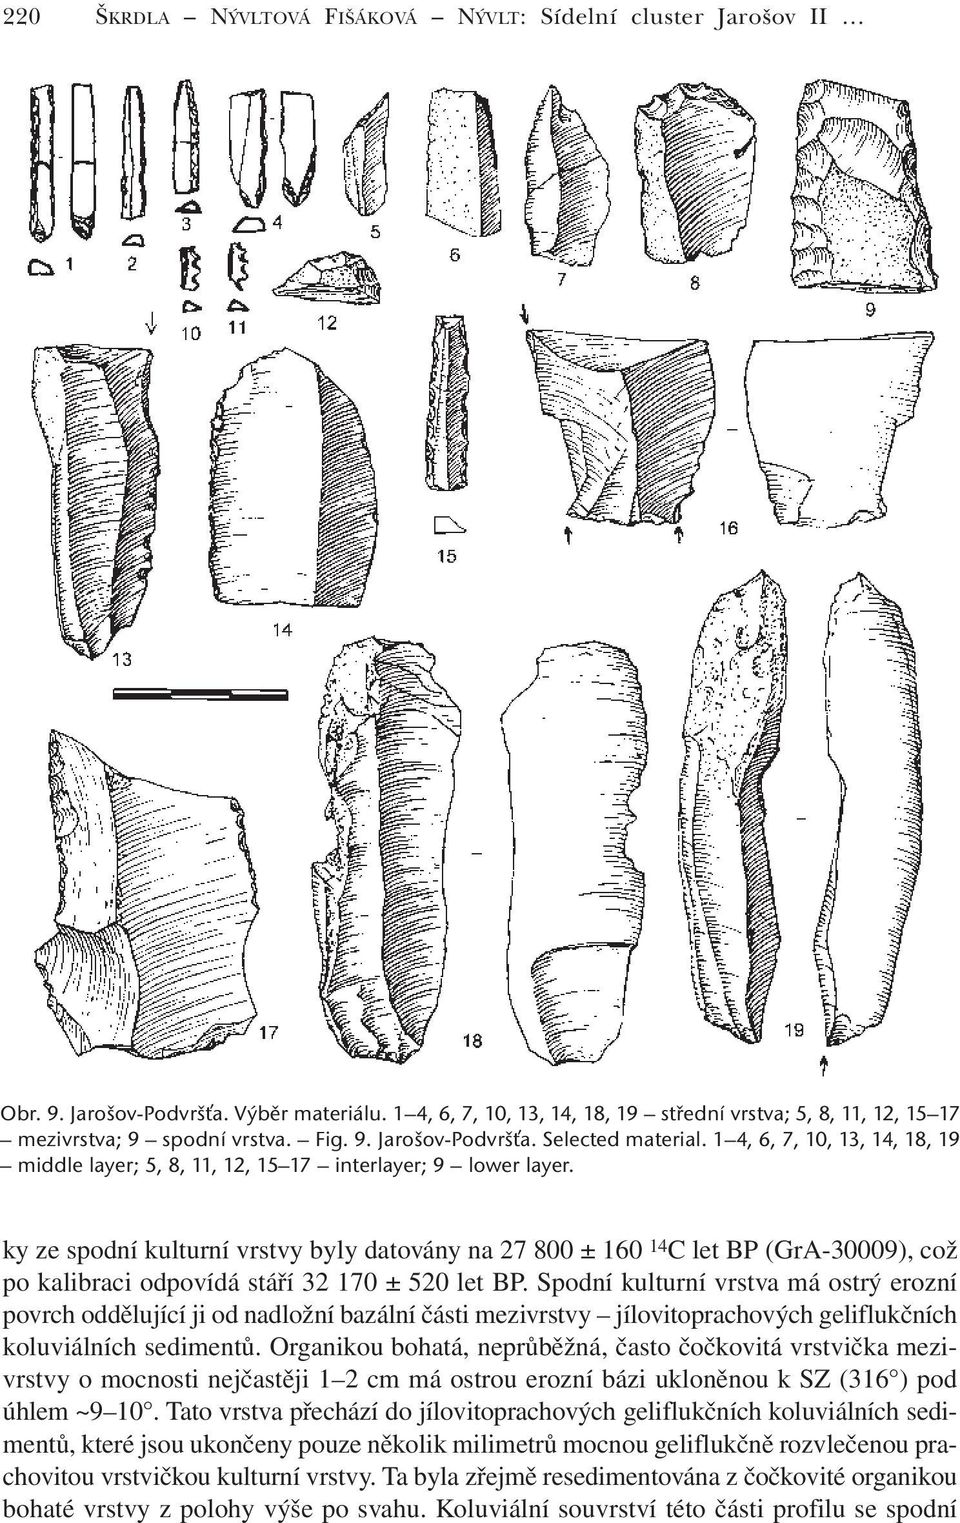 ky ze spodní kulturní vrstvy byly datovány na 27 800 ± 160 14 C let BP (GrA-30009), což po kalibraci odpovídá stáří 32 170 ± 520 let BP.